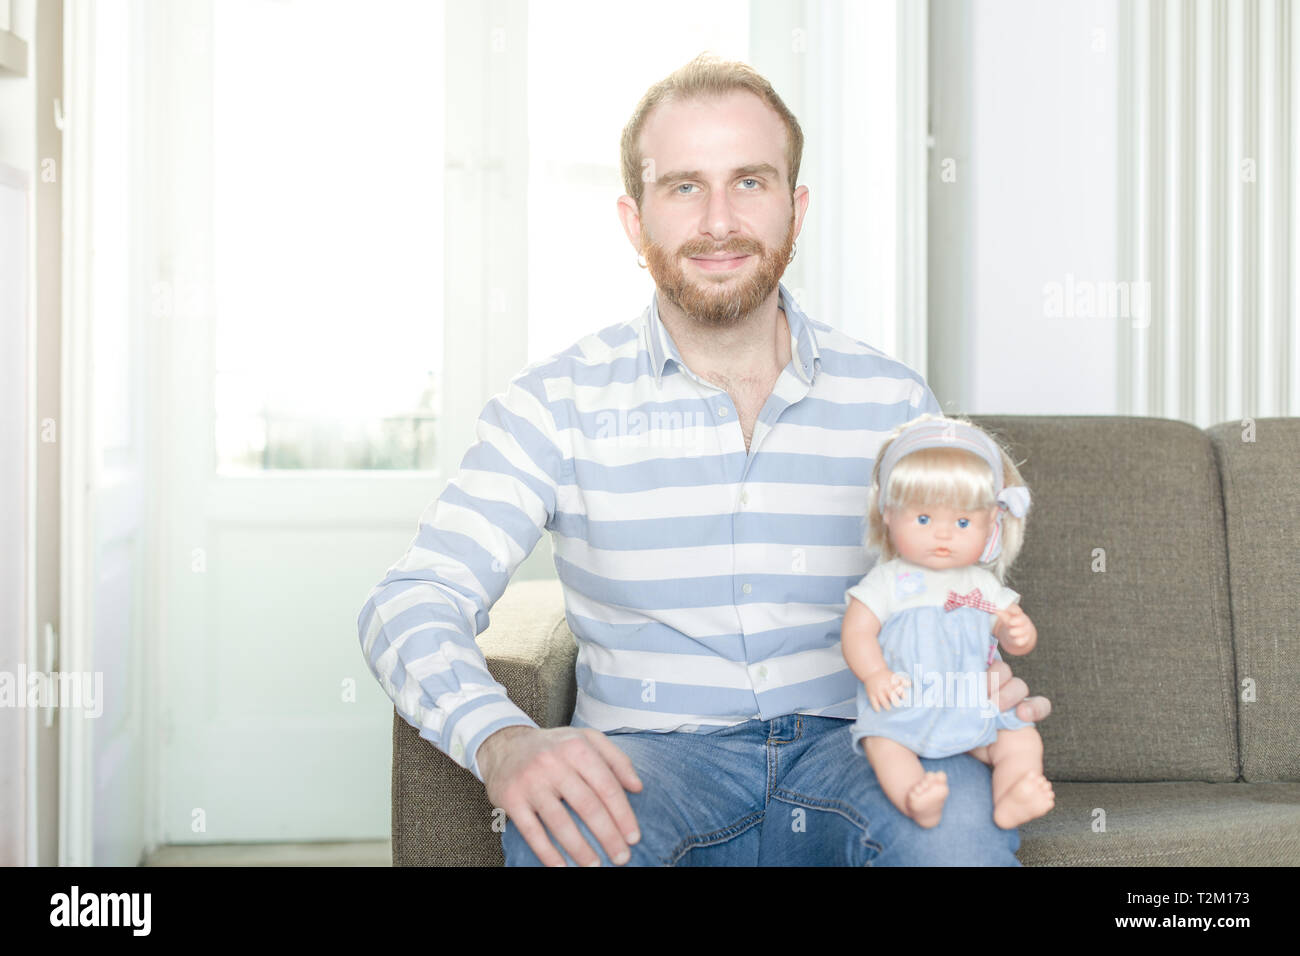 Smiling Redhead homme sur une table avec une poupée assise sur son genou Banque D'Images